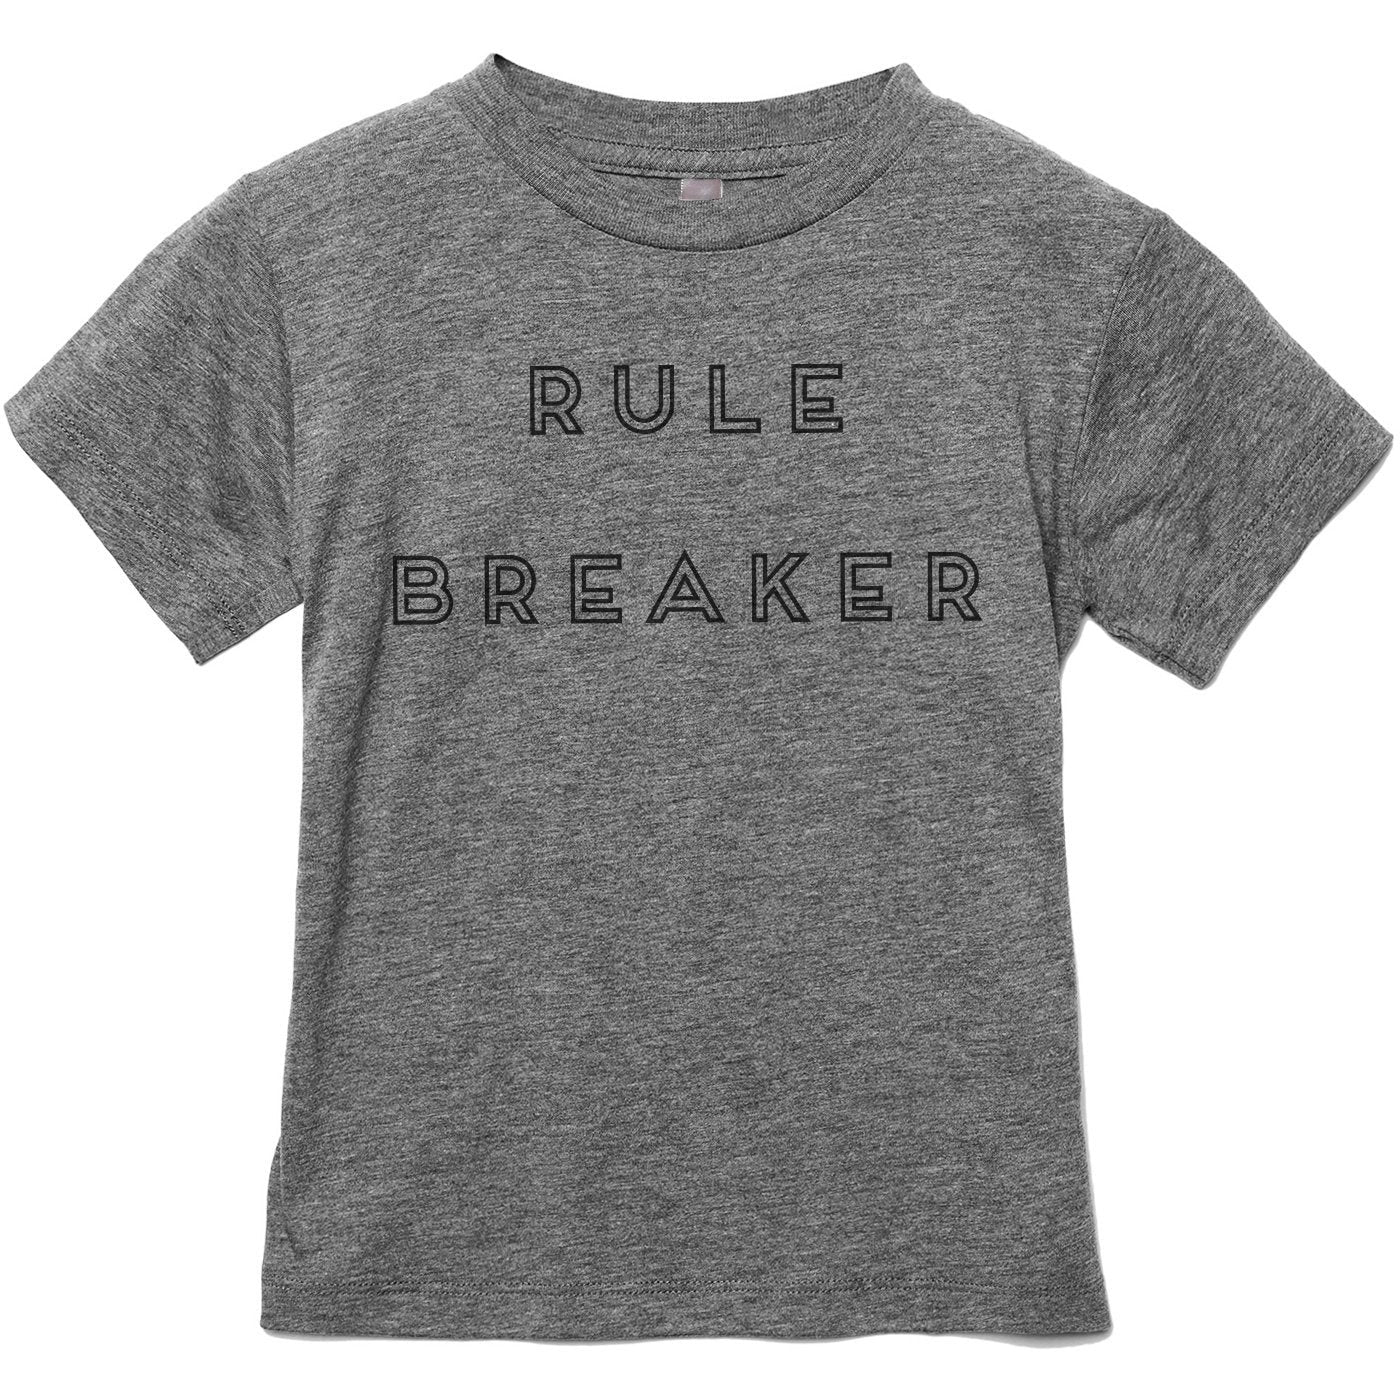 Rule Breaker - Stories You Can Wear